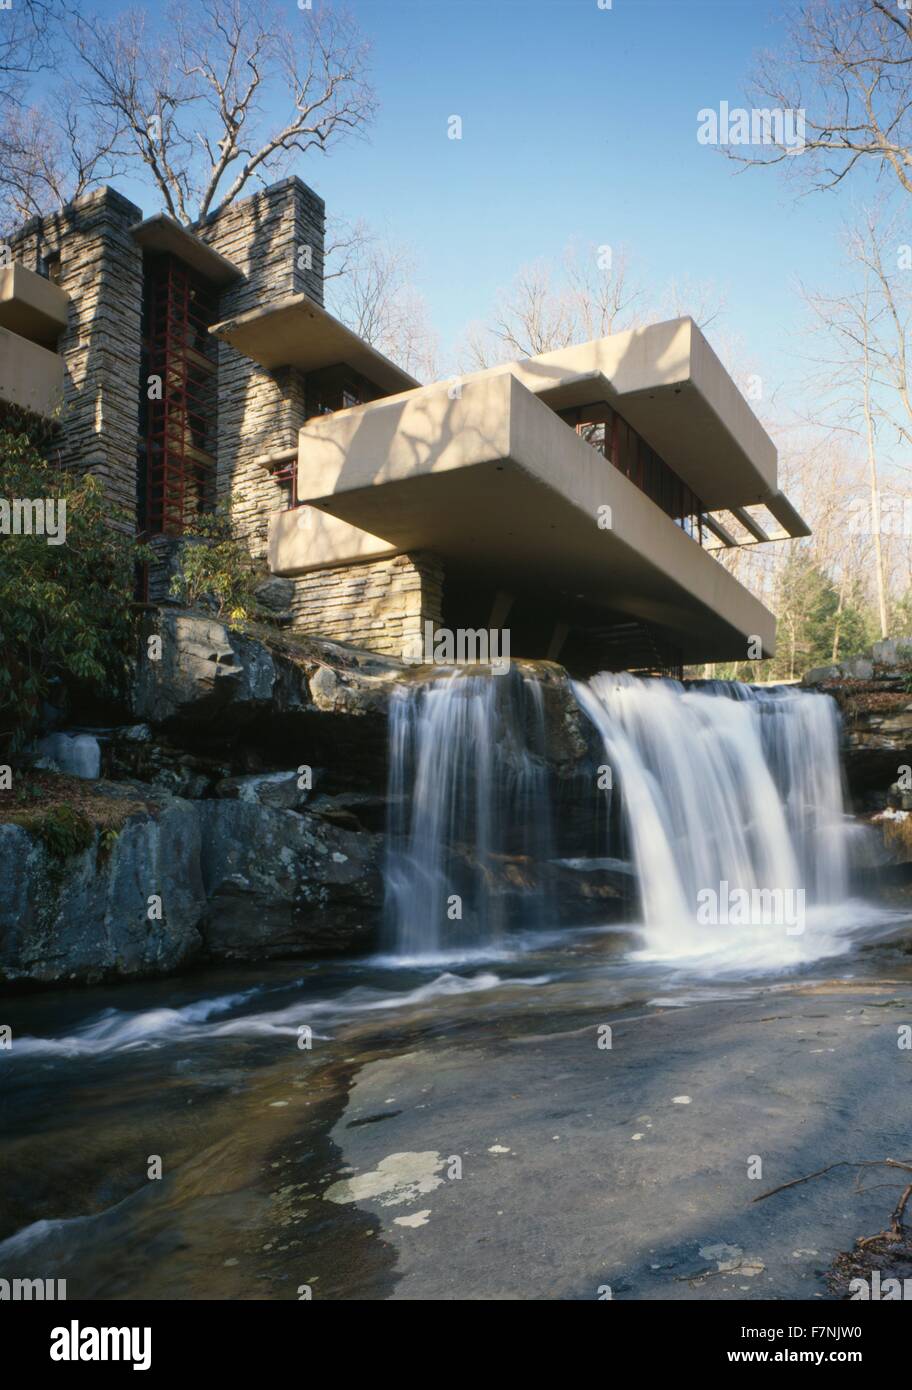 Ou Fallingwater Kaufmann Résidence est une maison conçue par l'architecte Frank Lloyd Wright en 1935 dans le sud-ouest de la Pennsylvanie rurale Banque D'Images